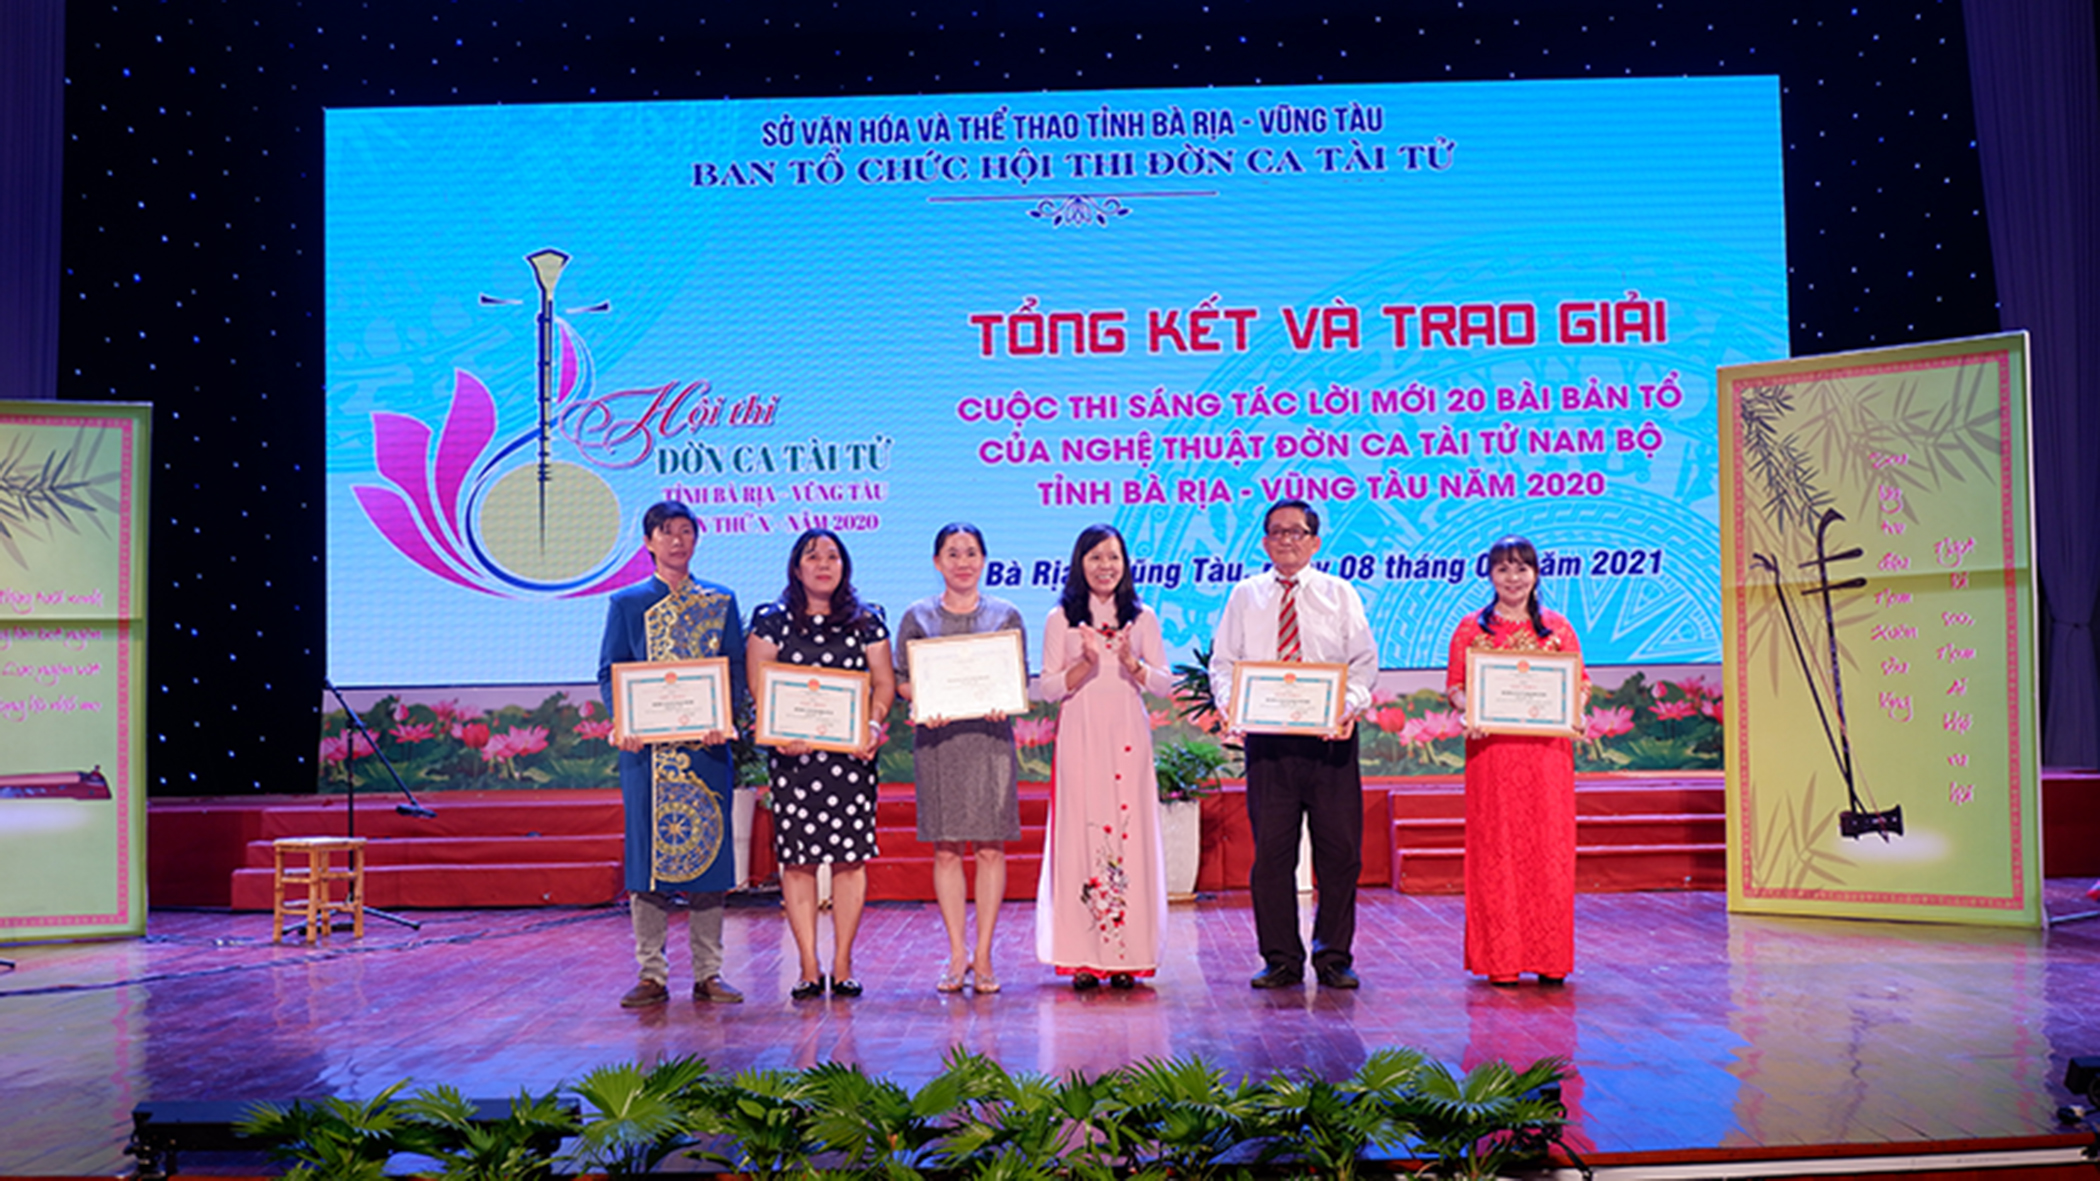 Bà Nguyễn Thị Ánh Hồng, Phó Giám đốc Sở VH-TT trao giải A và B cho 5 đội thi tại Hội thi ĐCTT “Bà Rịa - Vũng Tàu hòa nhịp đờn ca” năm 2020 diễn ra vào ngày 8/1/2021.